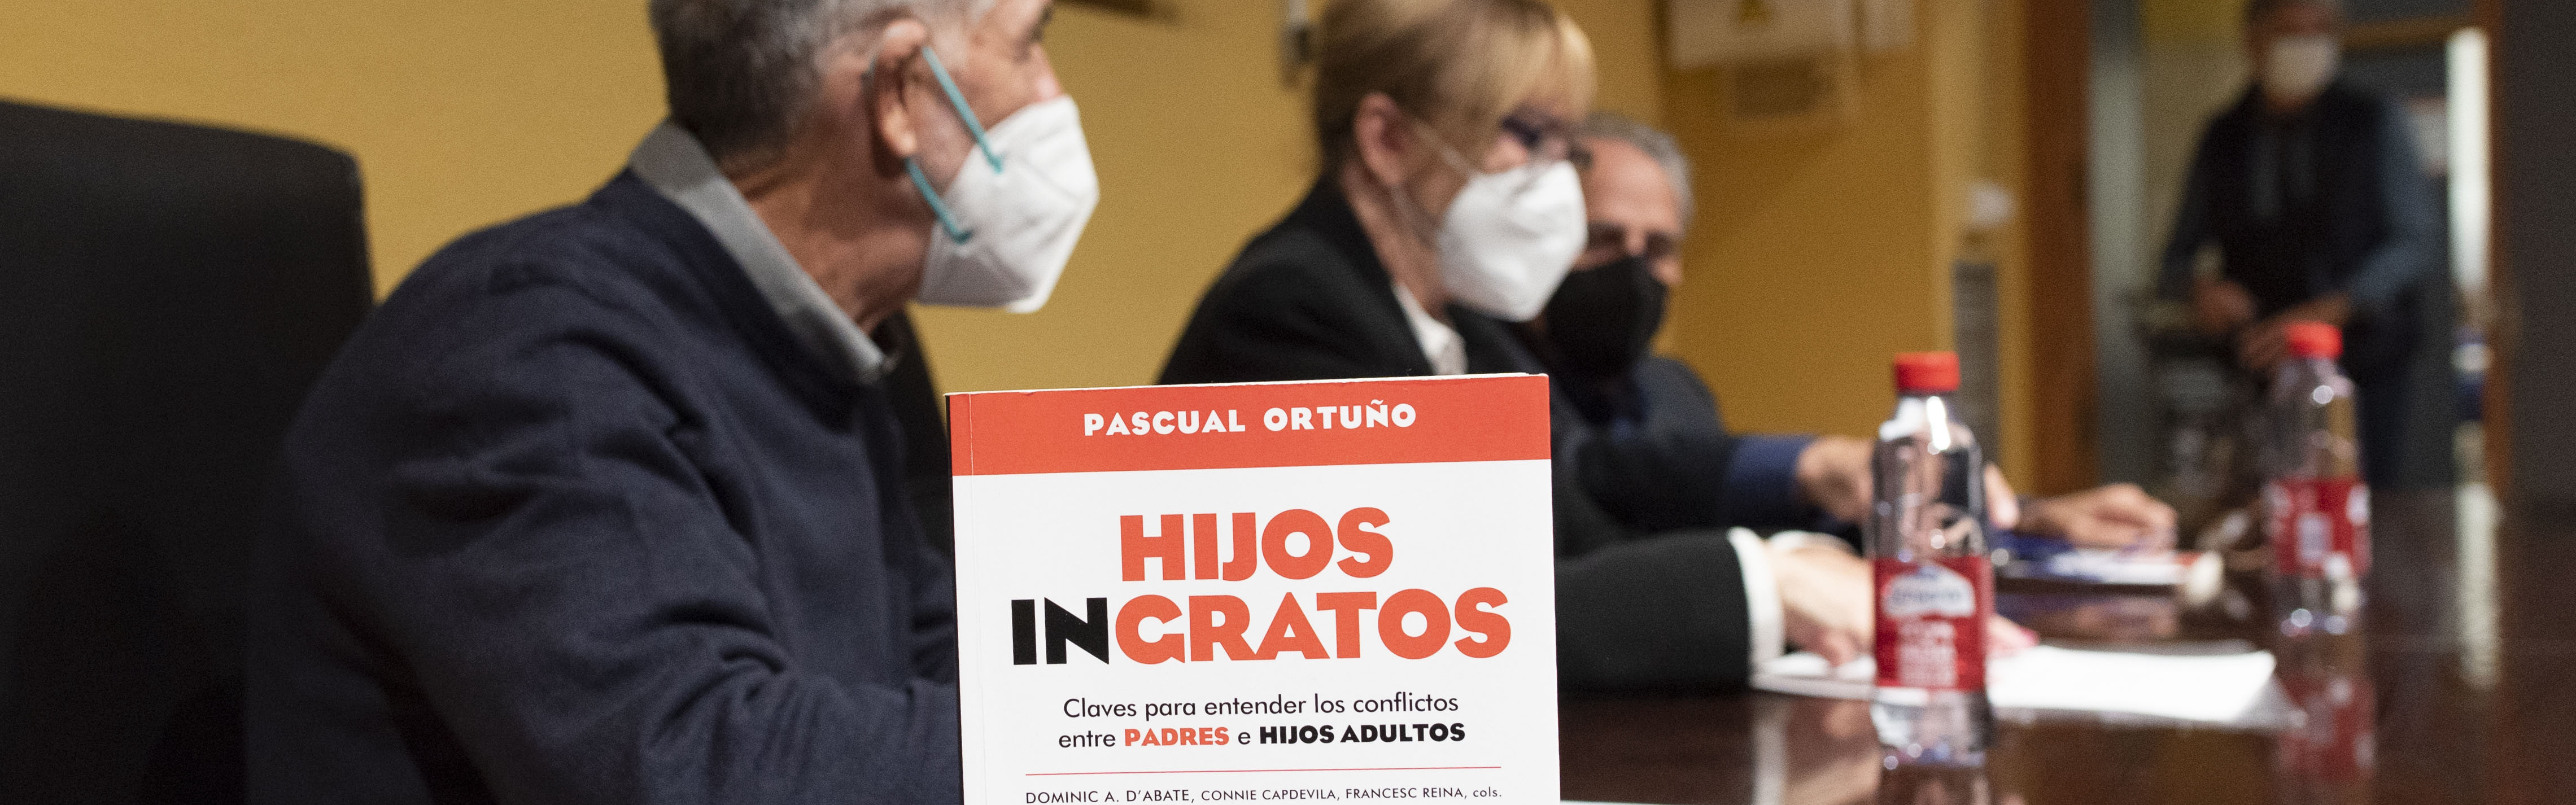 El magistrado Pascual Ortuño presenta en la UMU su libro ‘Hijos ingratos’